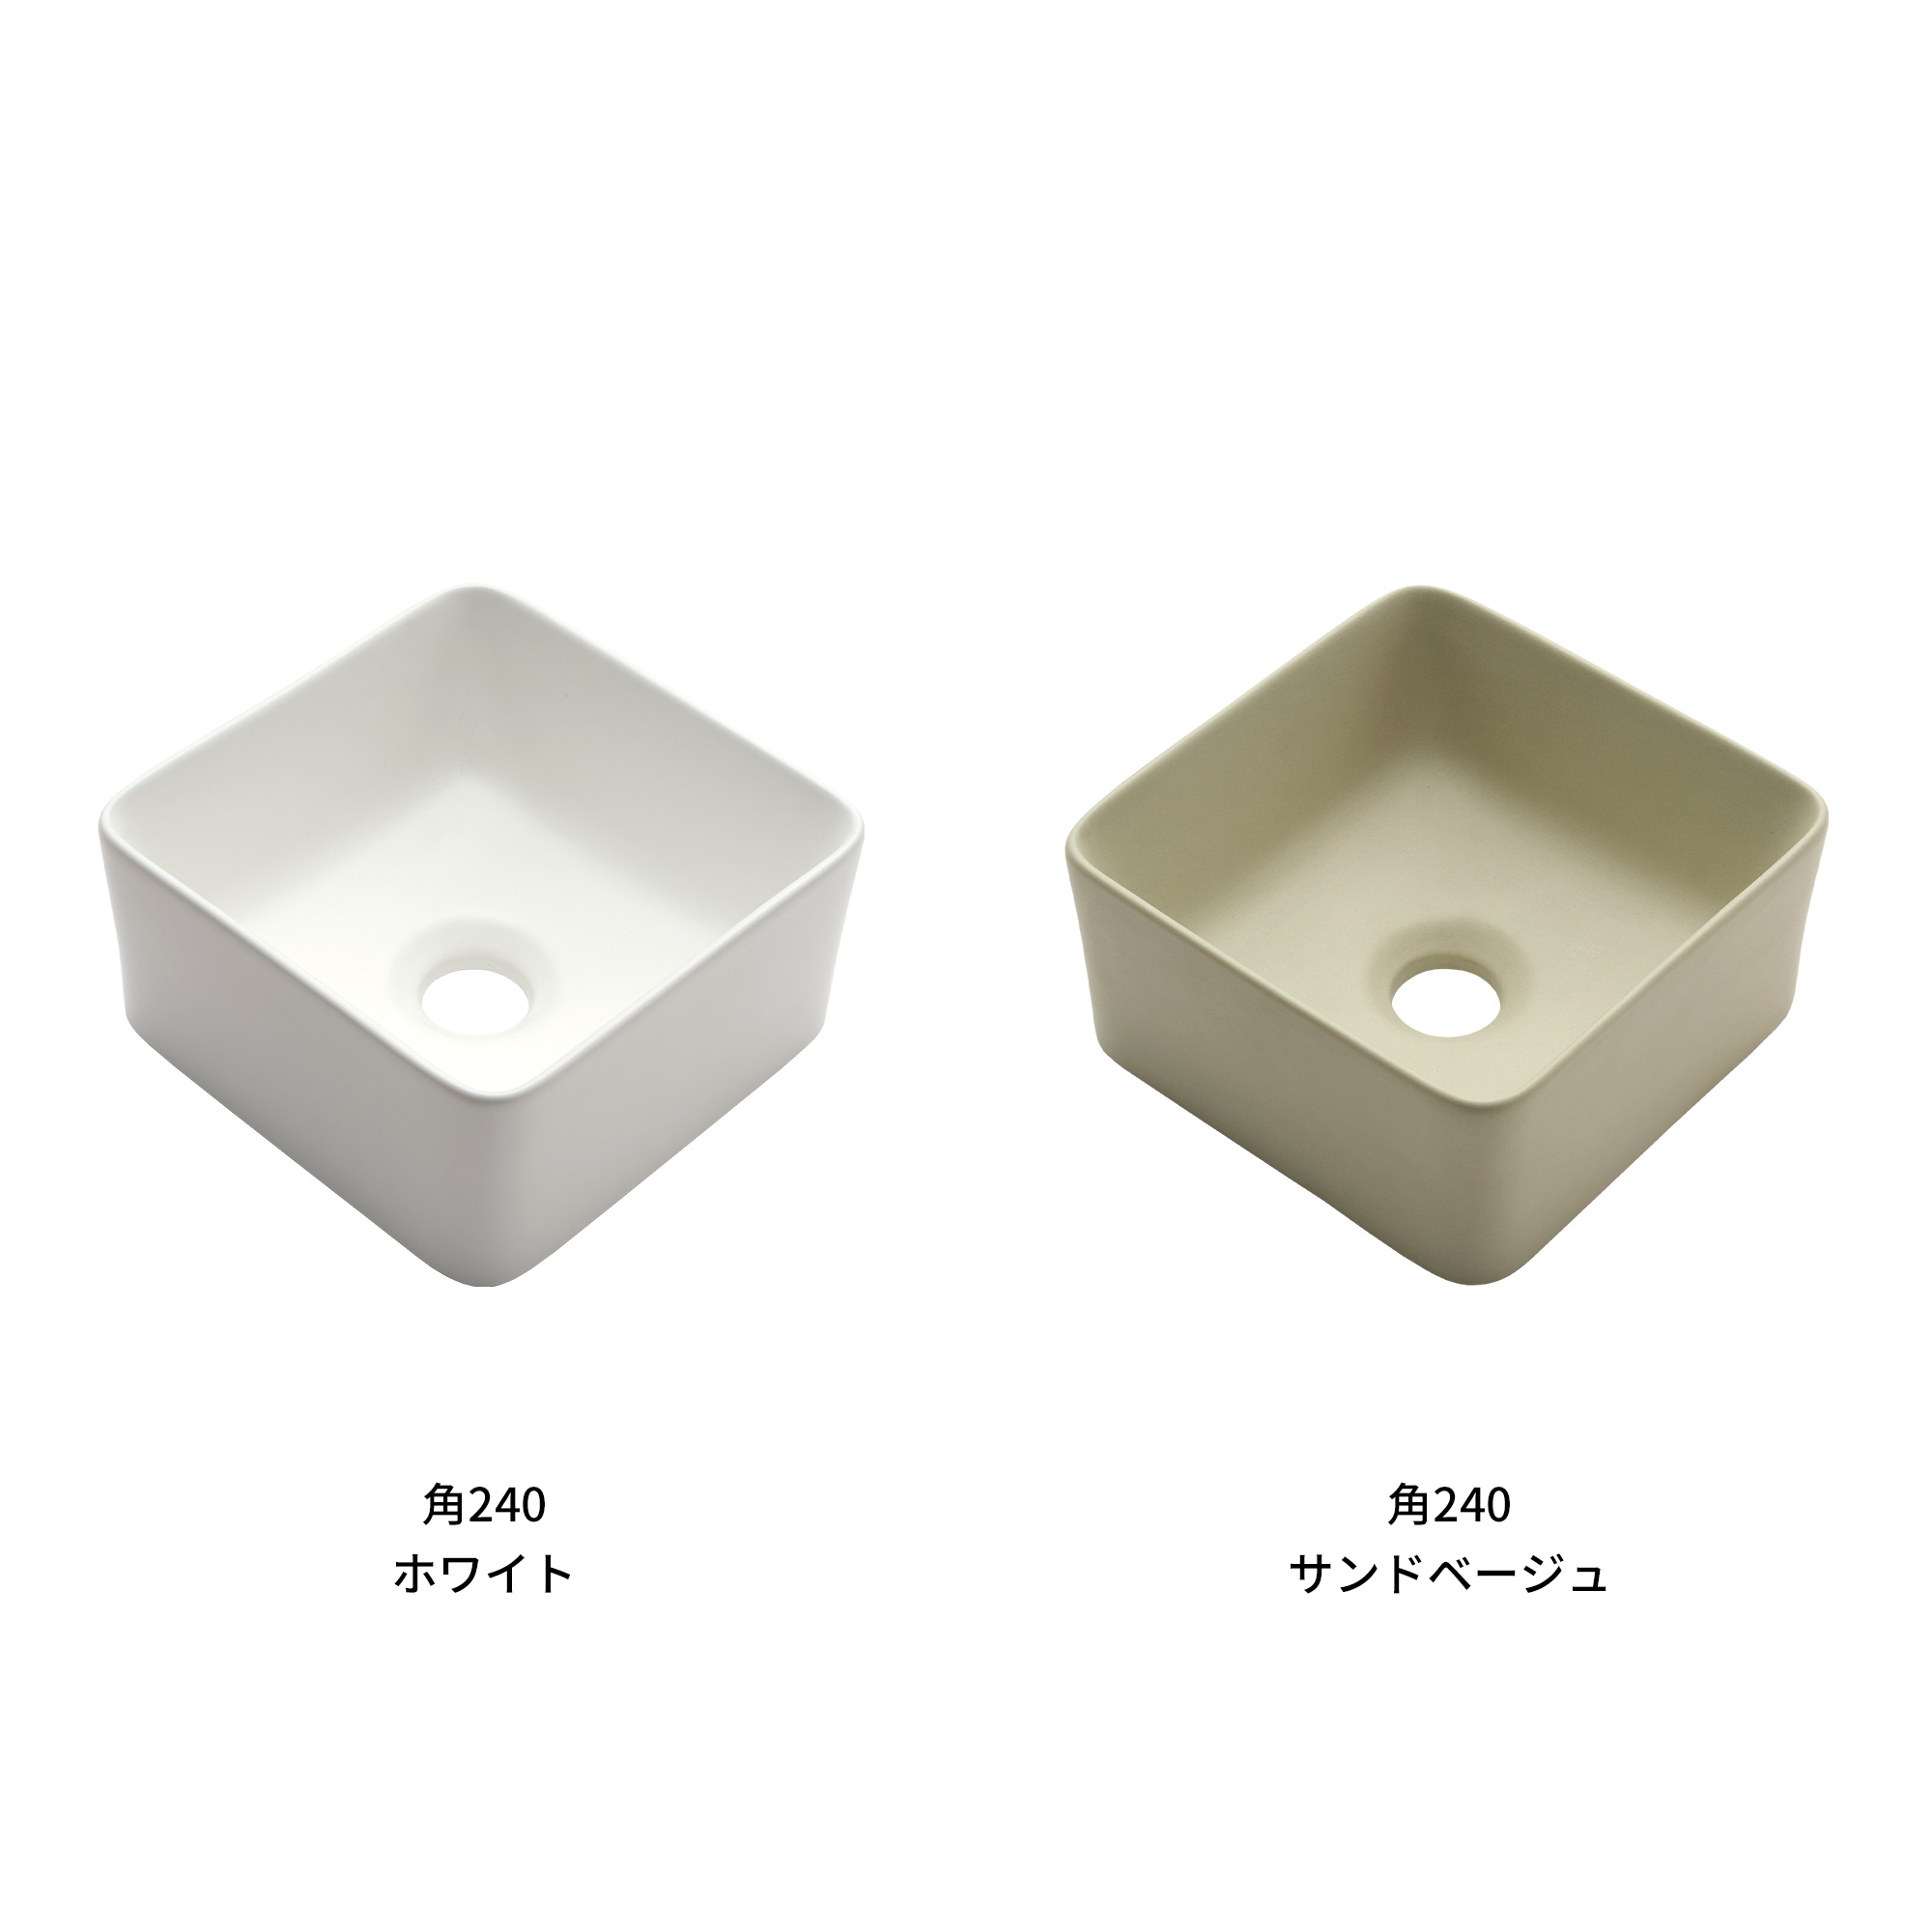 木の手洗いカウンター 陶器の手洗い器 角240 壁水栓用 KB-PR013-01-G165 ホッコリ感あるマットで空間になじみやすい質感の手洗い器です